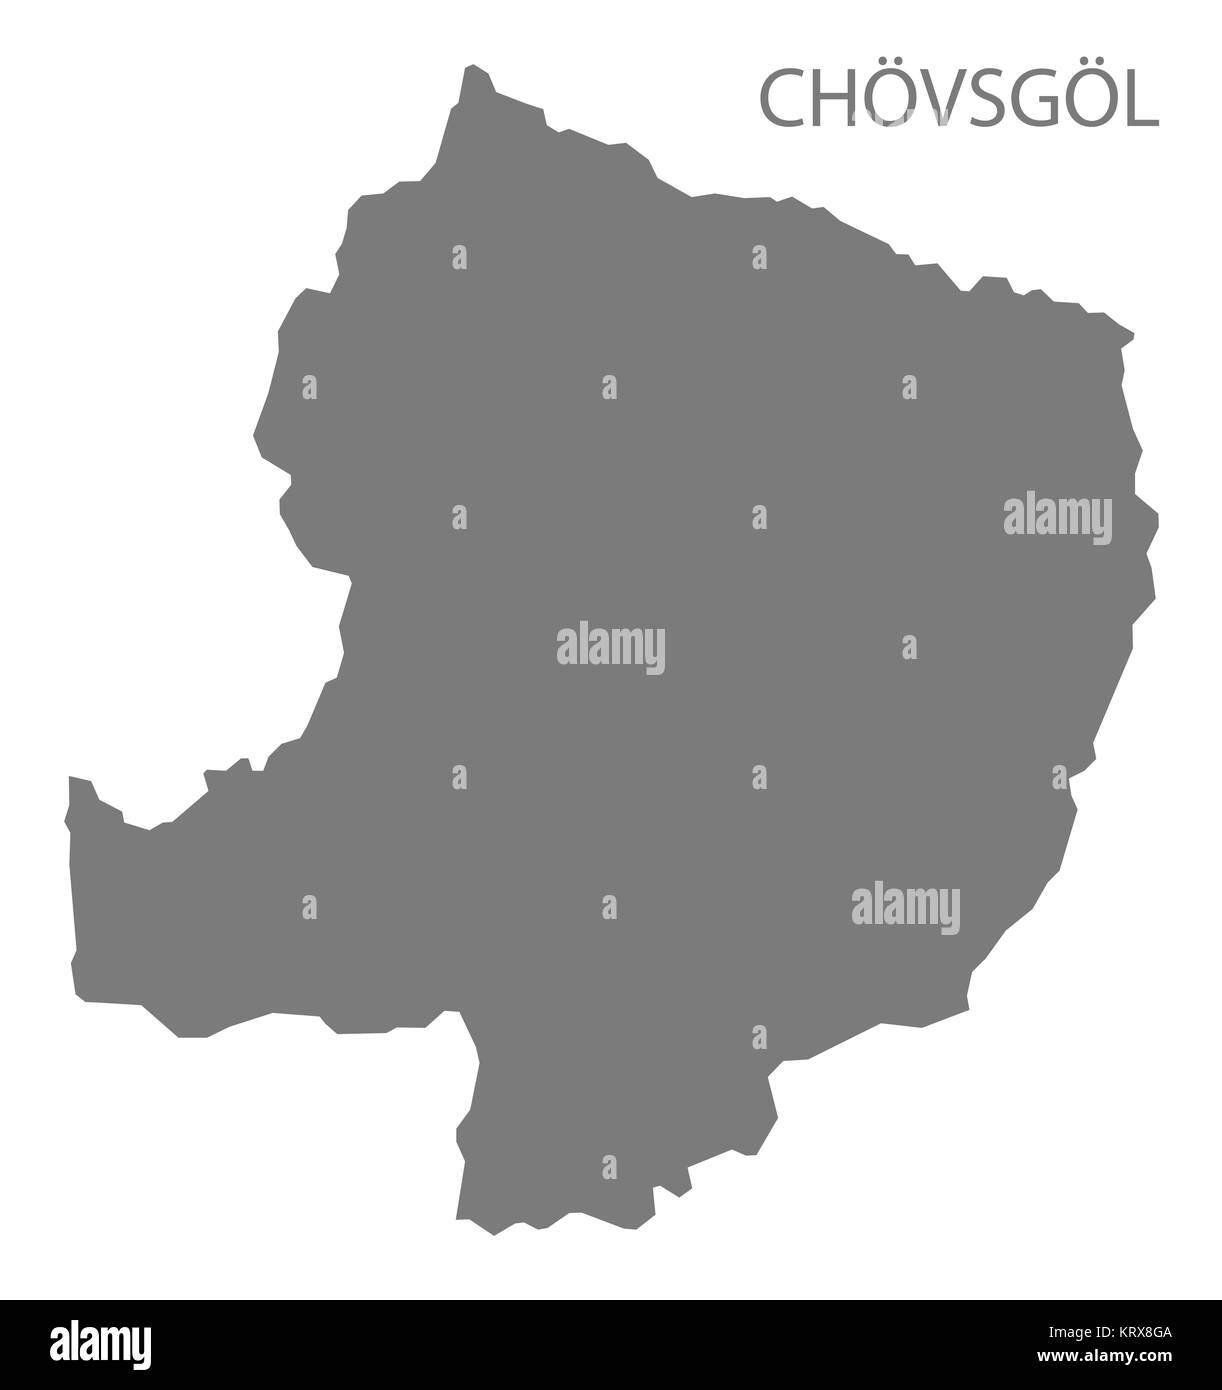 Chovsgol Mongolia Map grey Stock Photo